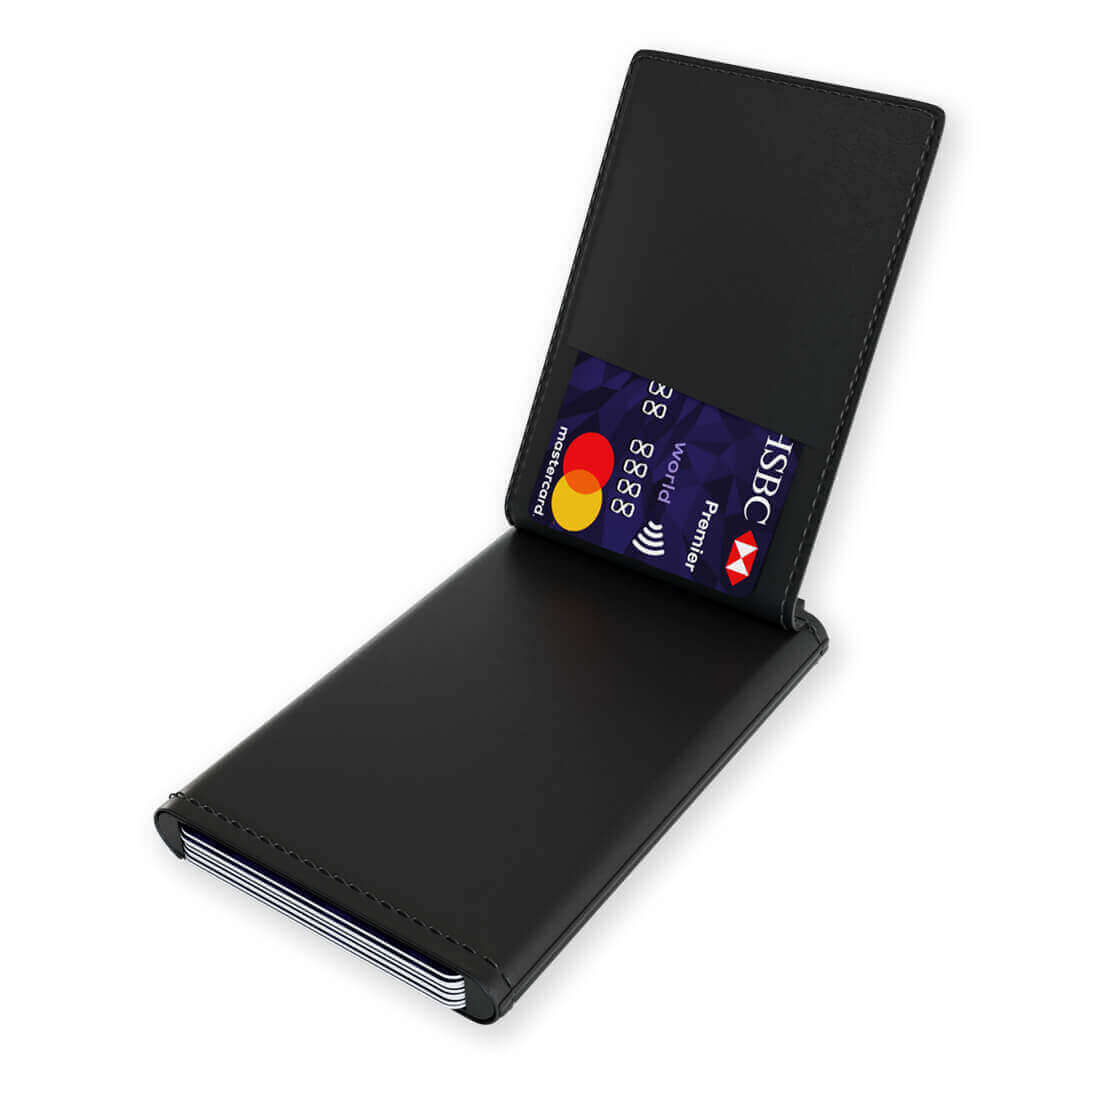 RFID-blockierender Kartenhalter mit Münzfach und Schnellzahlungssystem